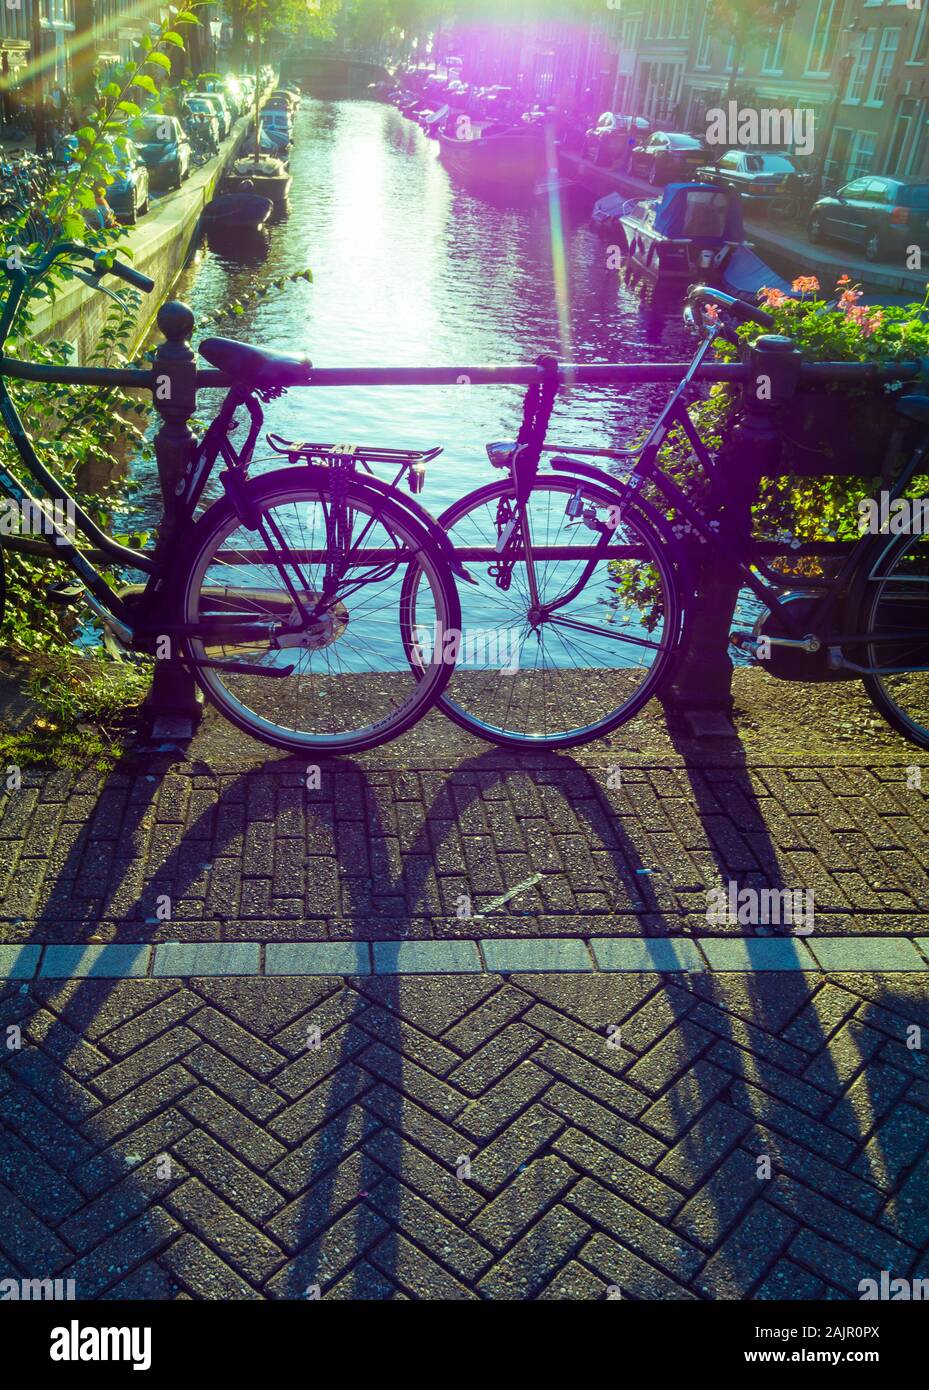 Off-color Image der abgestellte Fahrräder auf der Kanalbrücke in Amsterdams alten Jordaan Viertel (egelantiersgracht). Vintage Polaroid farbe Stil, Lens Flare. Stockfoto